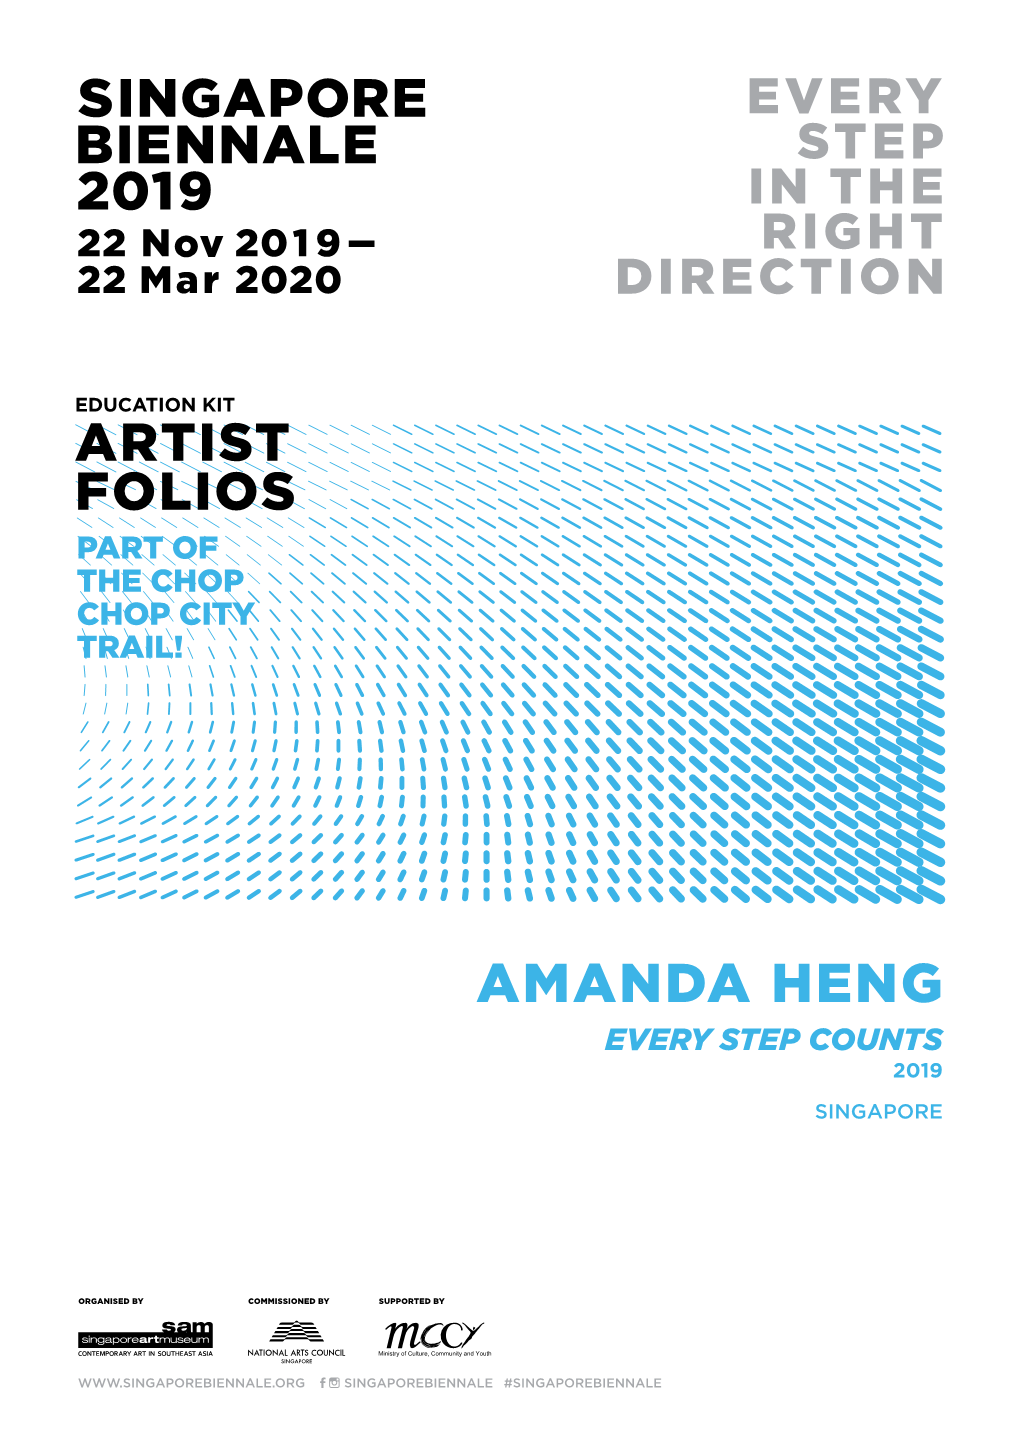 Amanda Heng Every Step Counts 2019 Singapore Education Kit Artist Folios Amanda Heng